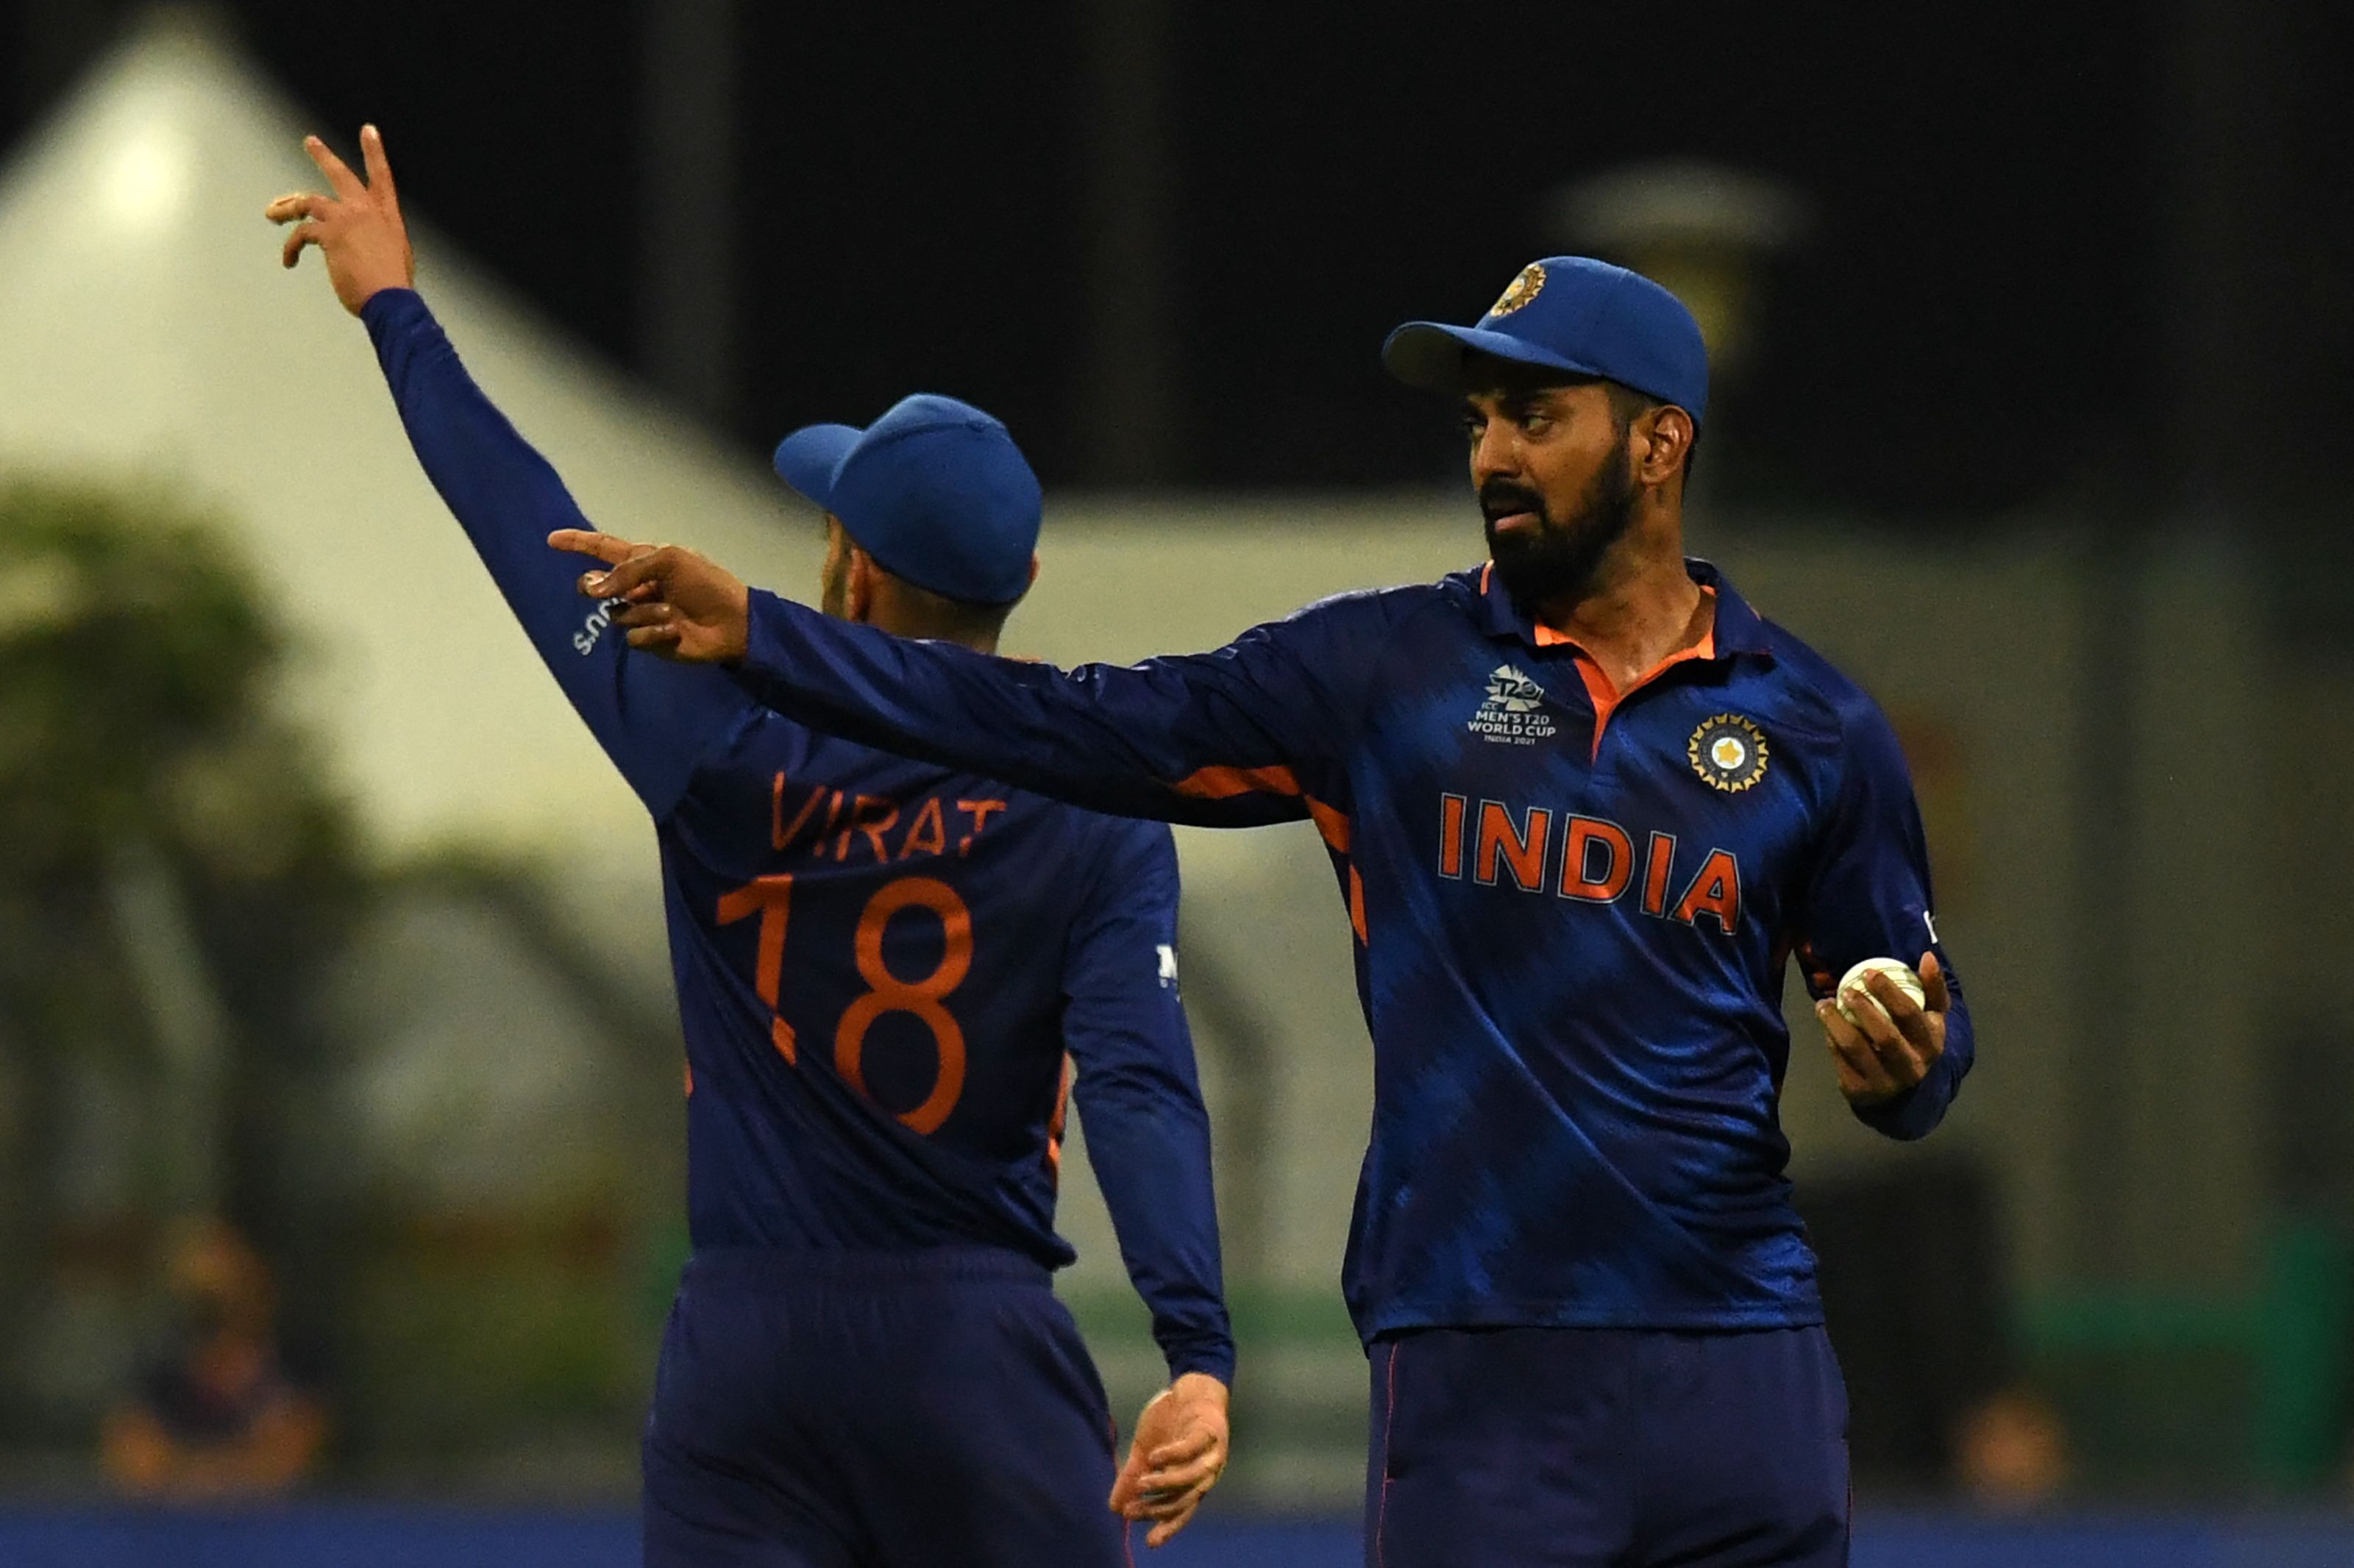 कप्तान विराट कोहली ने टीम इंडिया को विश्वास दिलाया कि हम कुछ खास कर सकते हैं: केएल राहुल